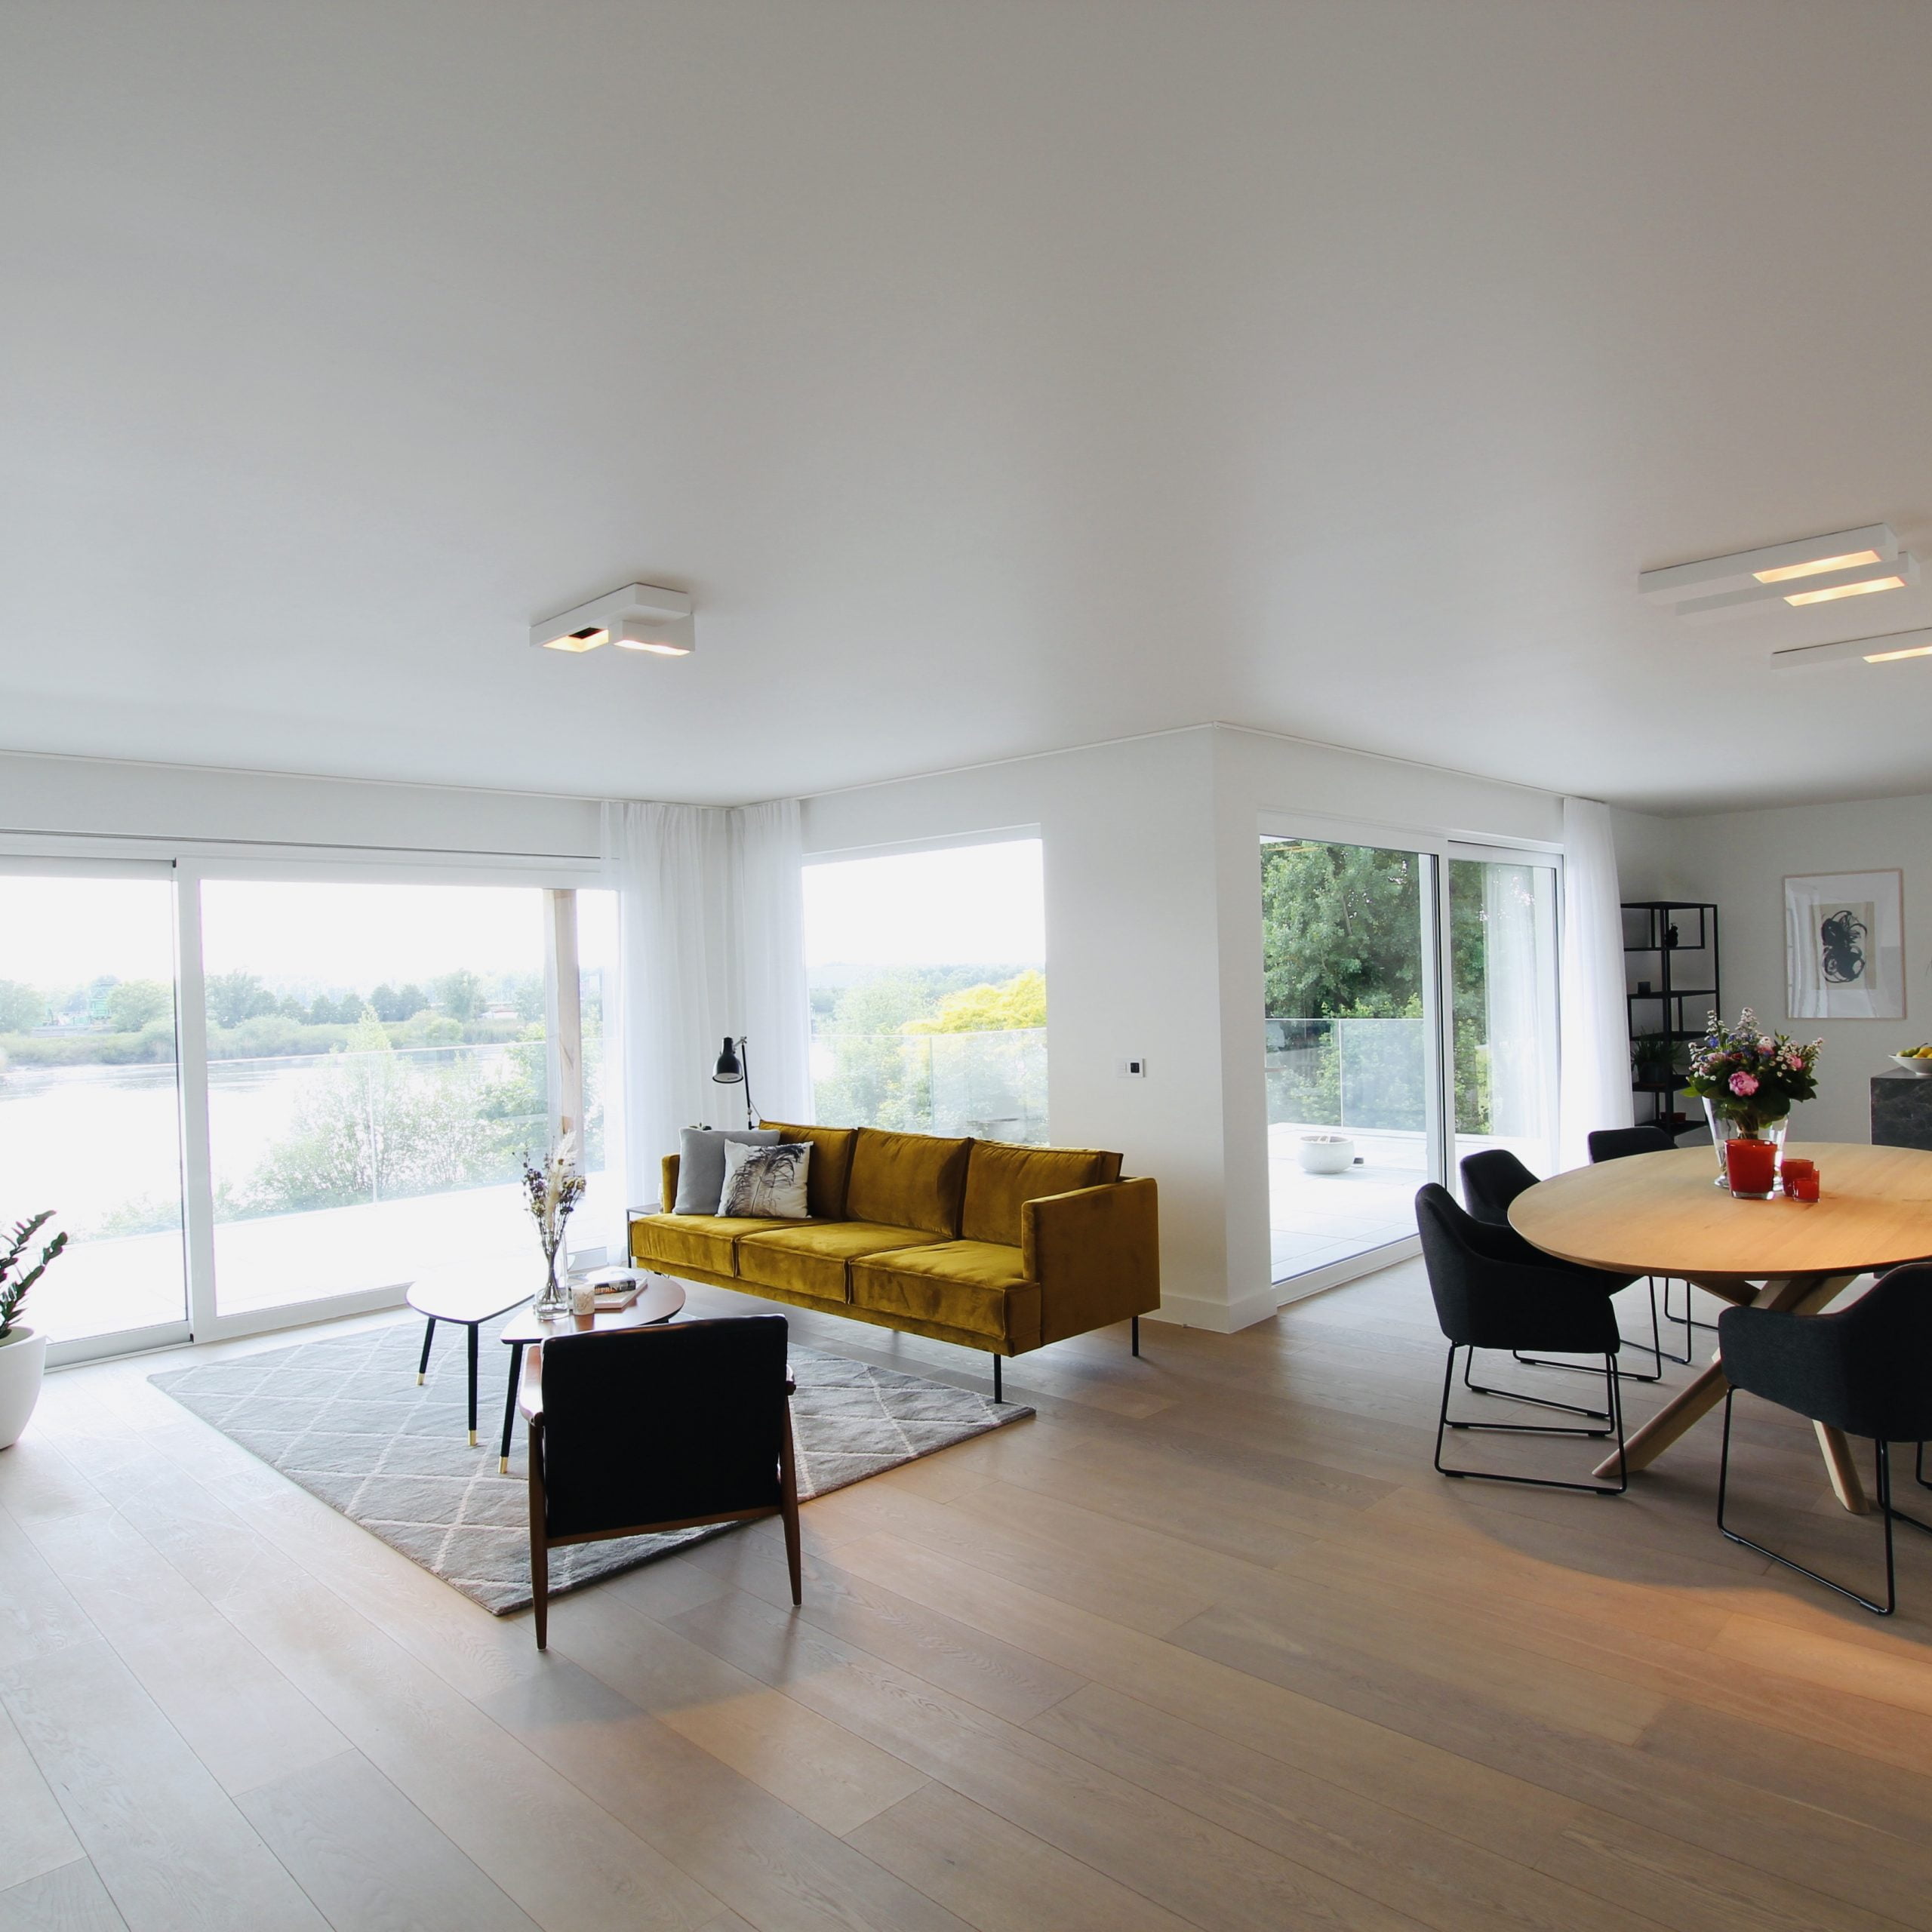 Niel – Luxury apartment for expats in Belgium